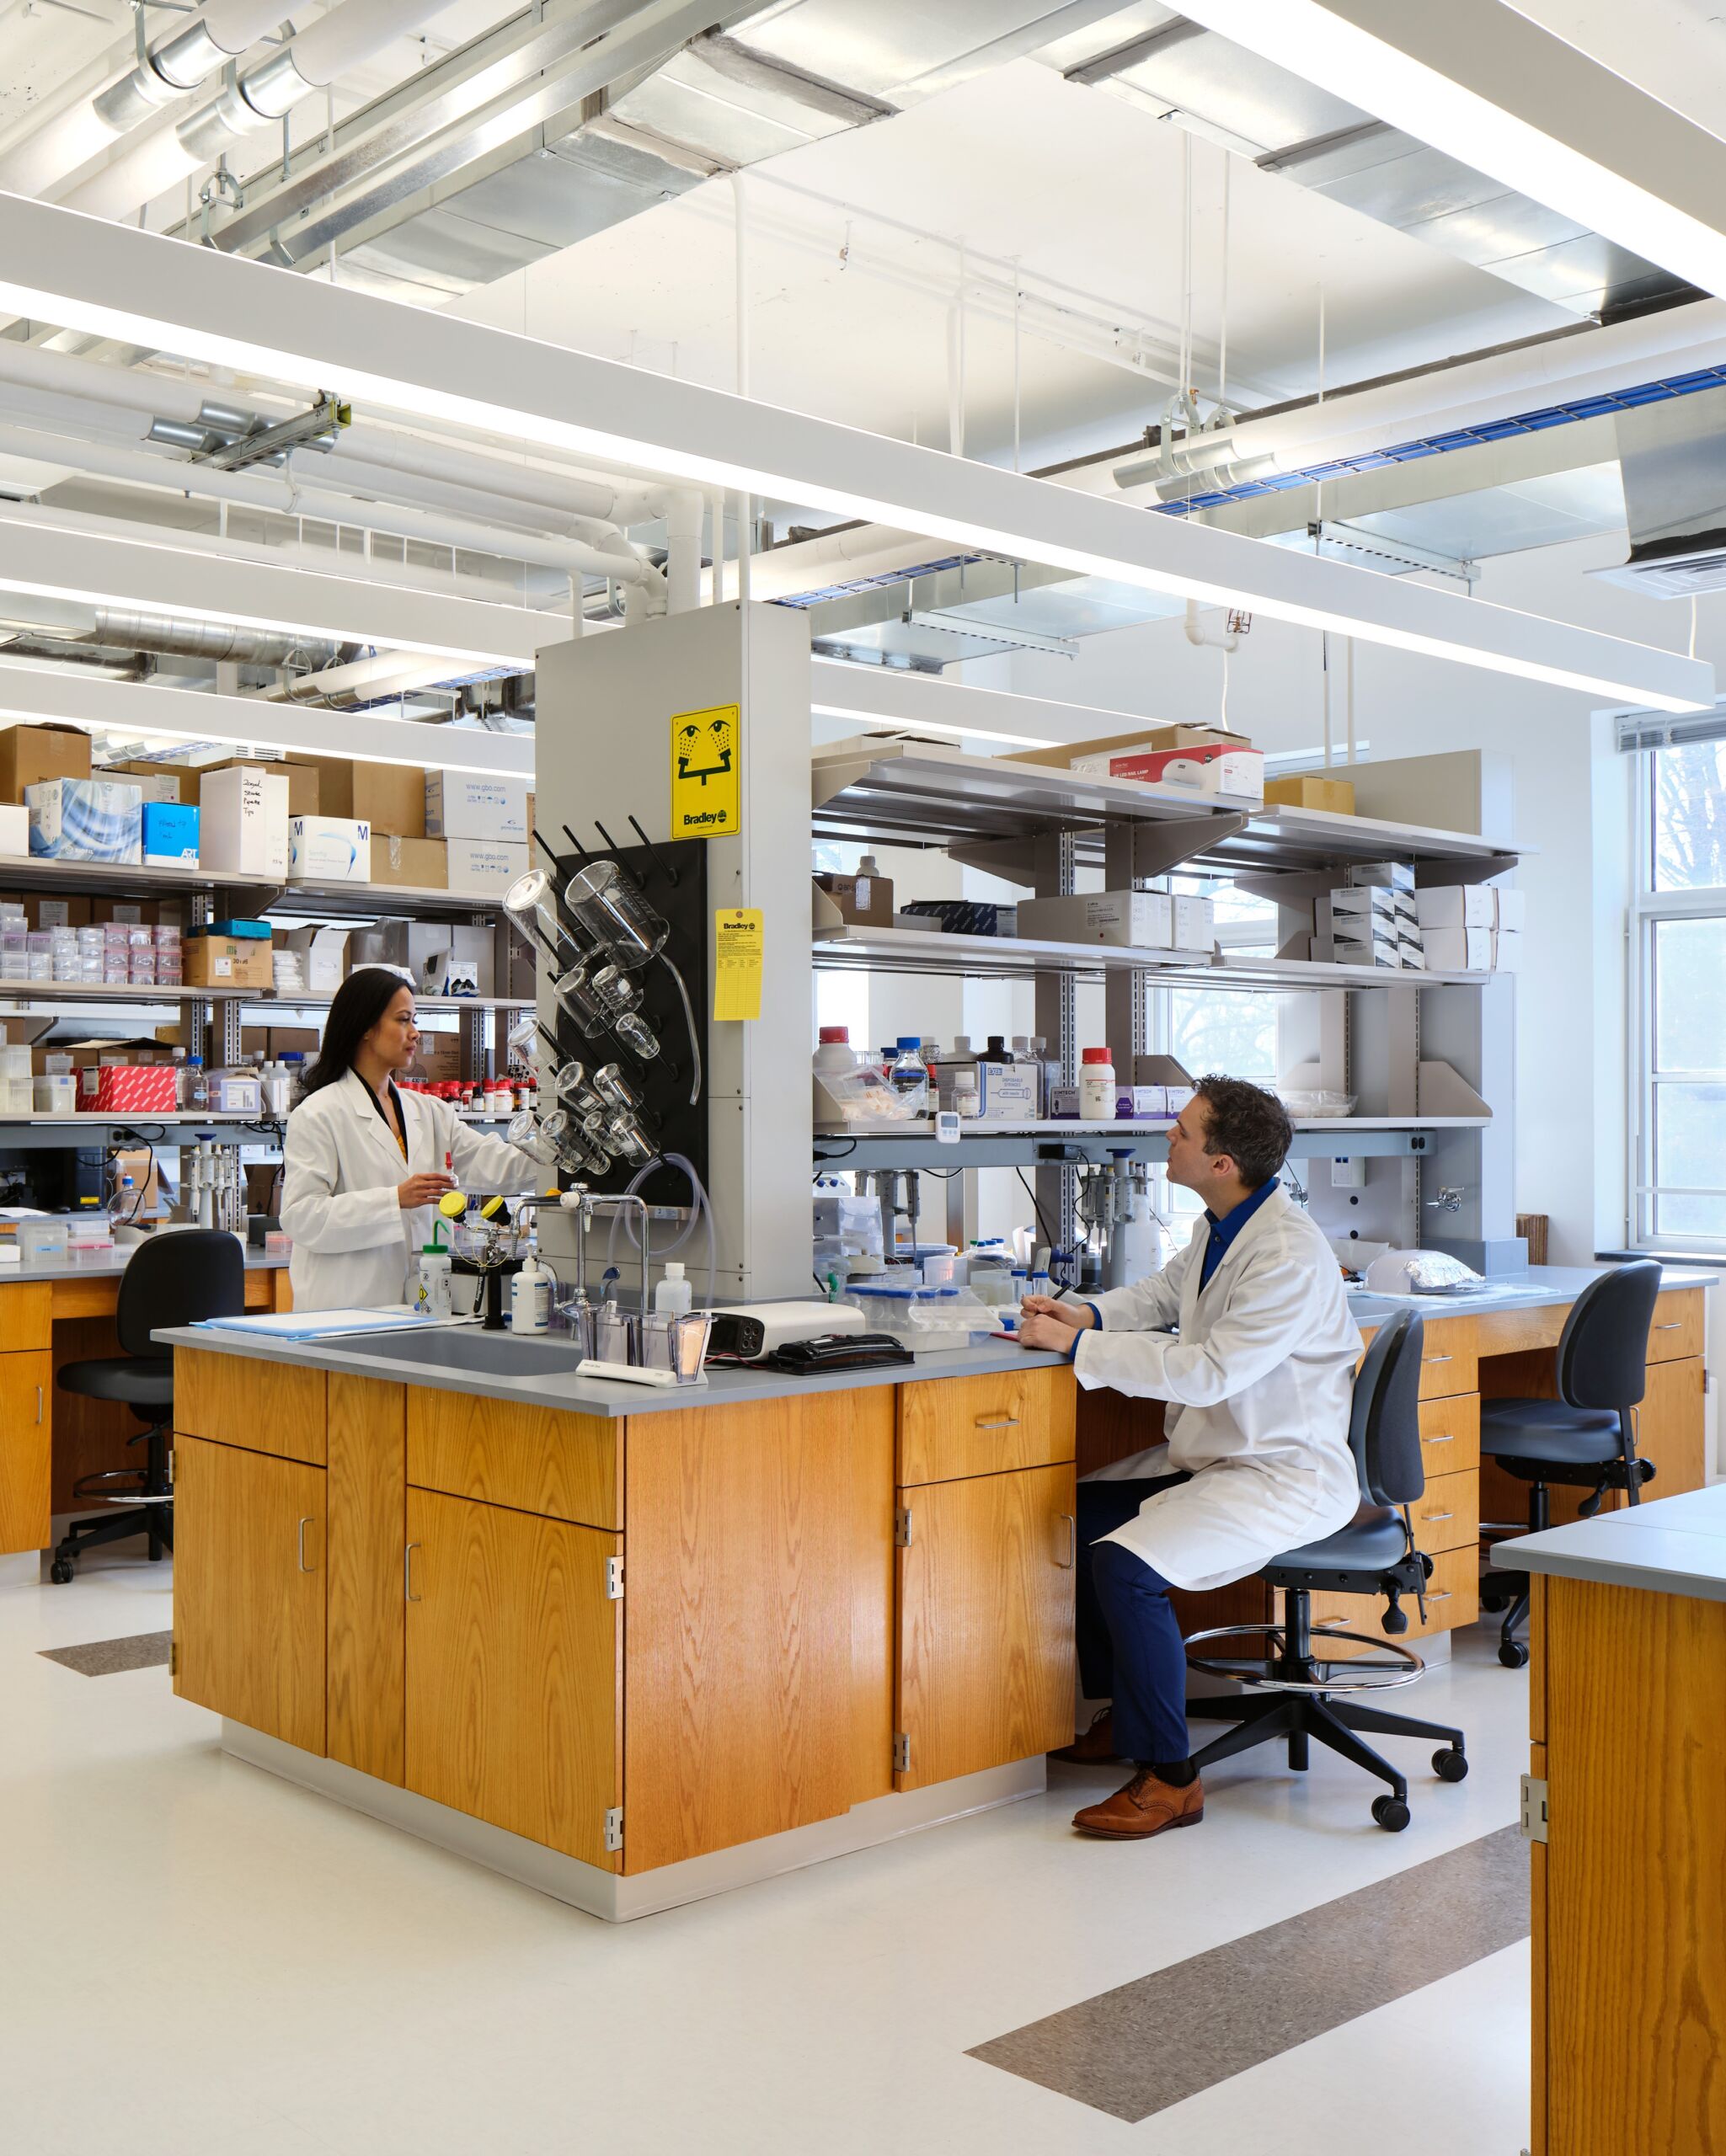 Johns Hopkins University Institute for Nano-Bio-Technology